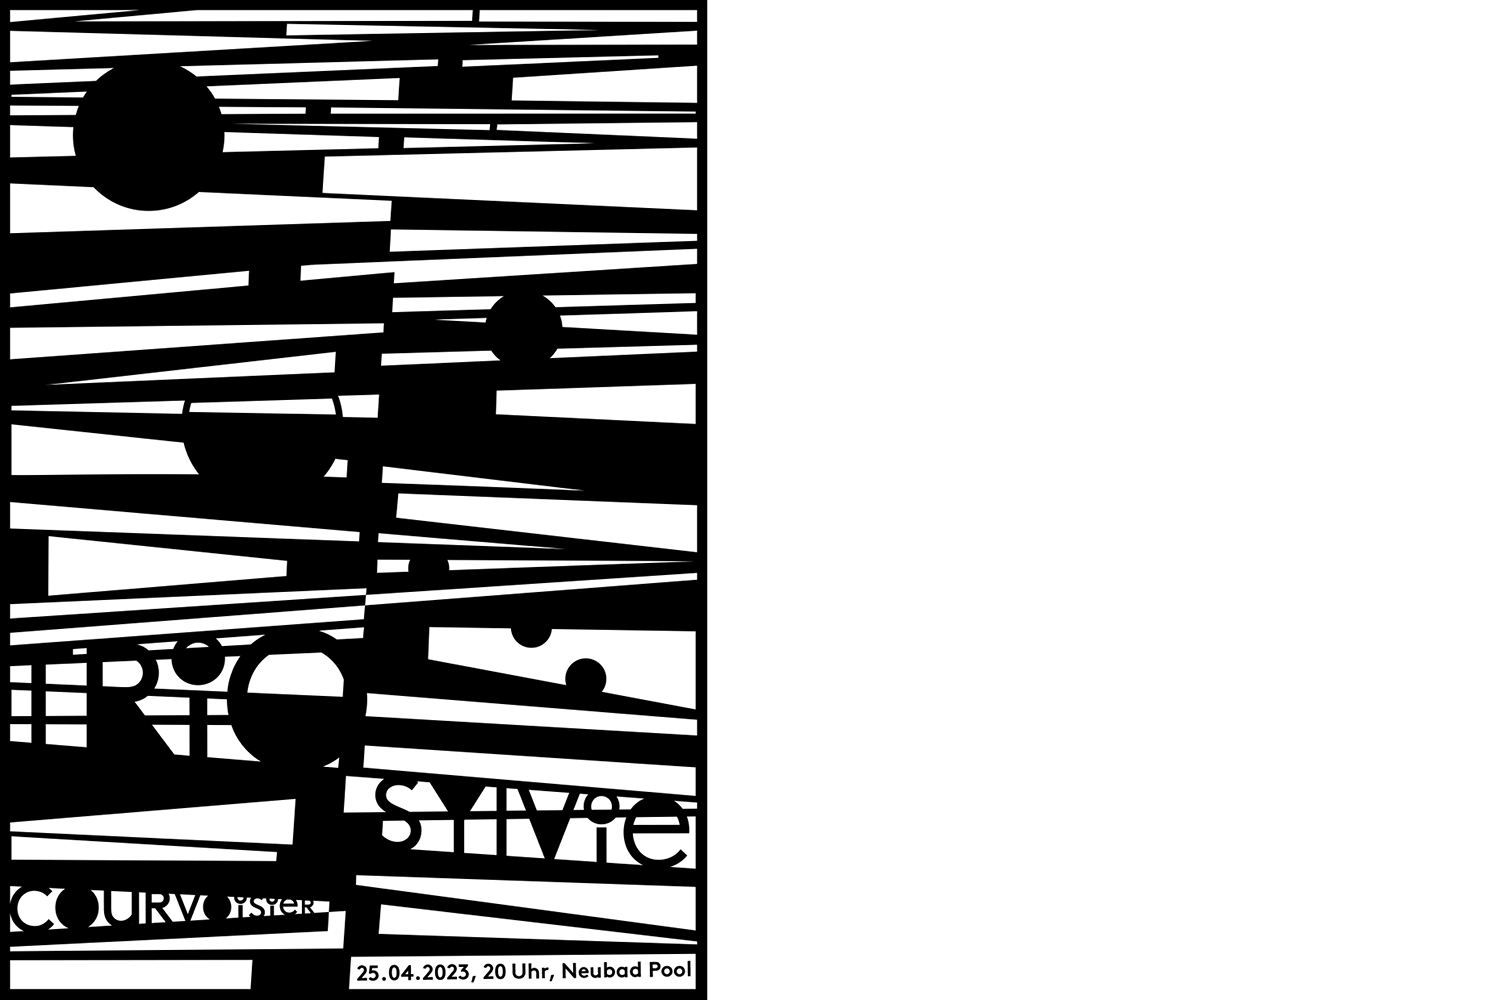 Konzertplakat für Sylvie Courvoysyer Trio mit schwarzen und weissen Zacken, schwarzen Kreisen und kleiner Schrift mit allen Infos